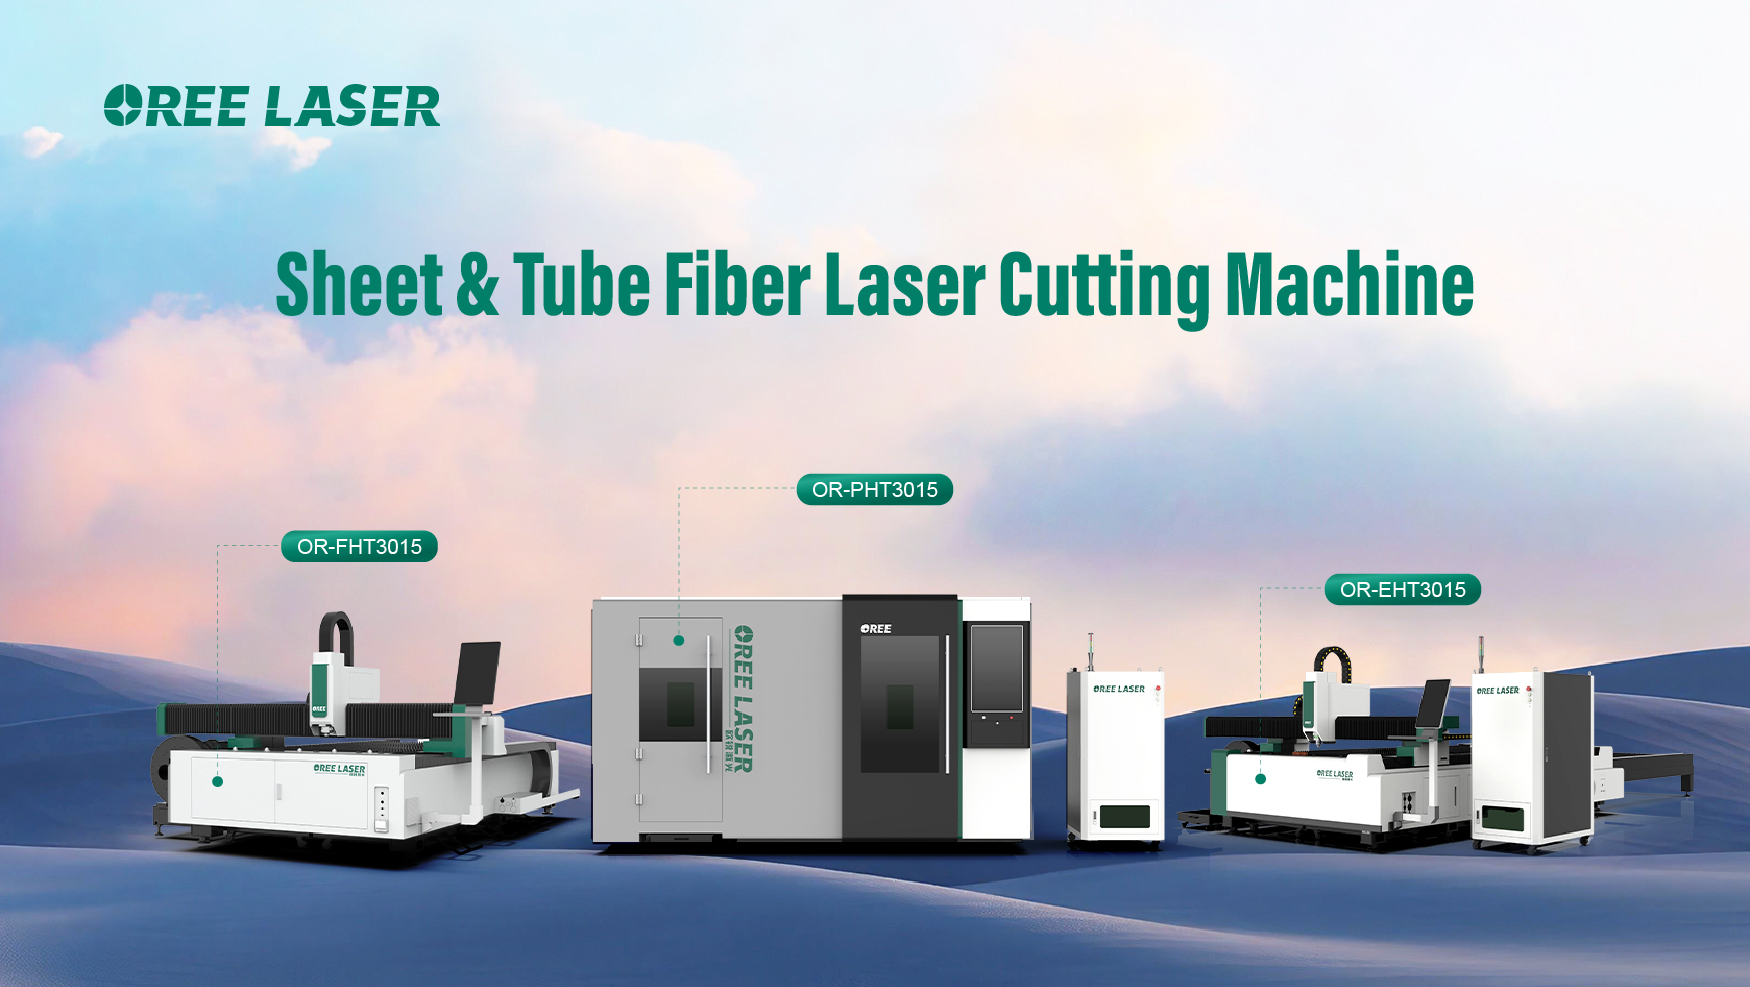 Sheet & Tube Dual-use Fiber Laser Cutting Machine | Oree Laser